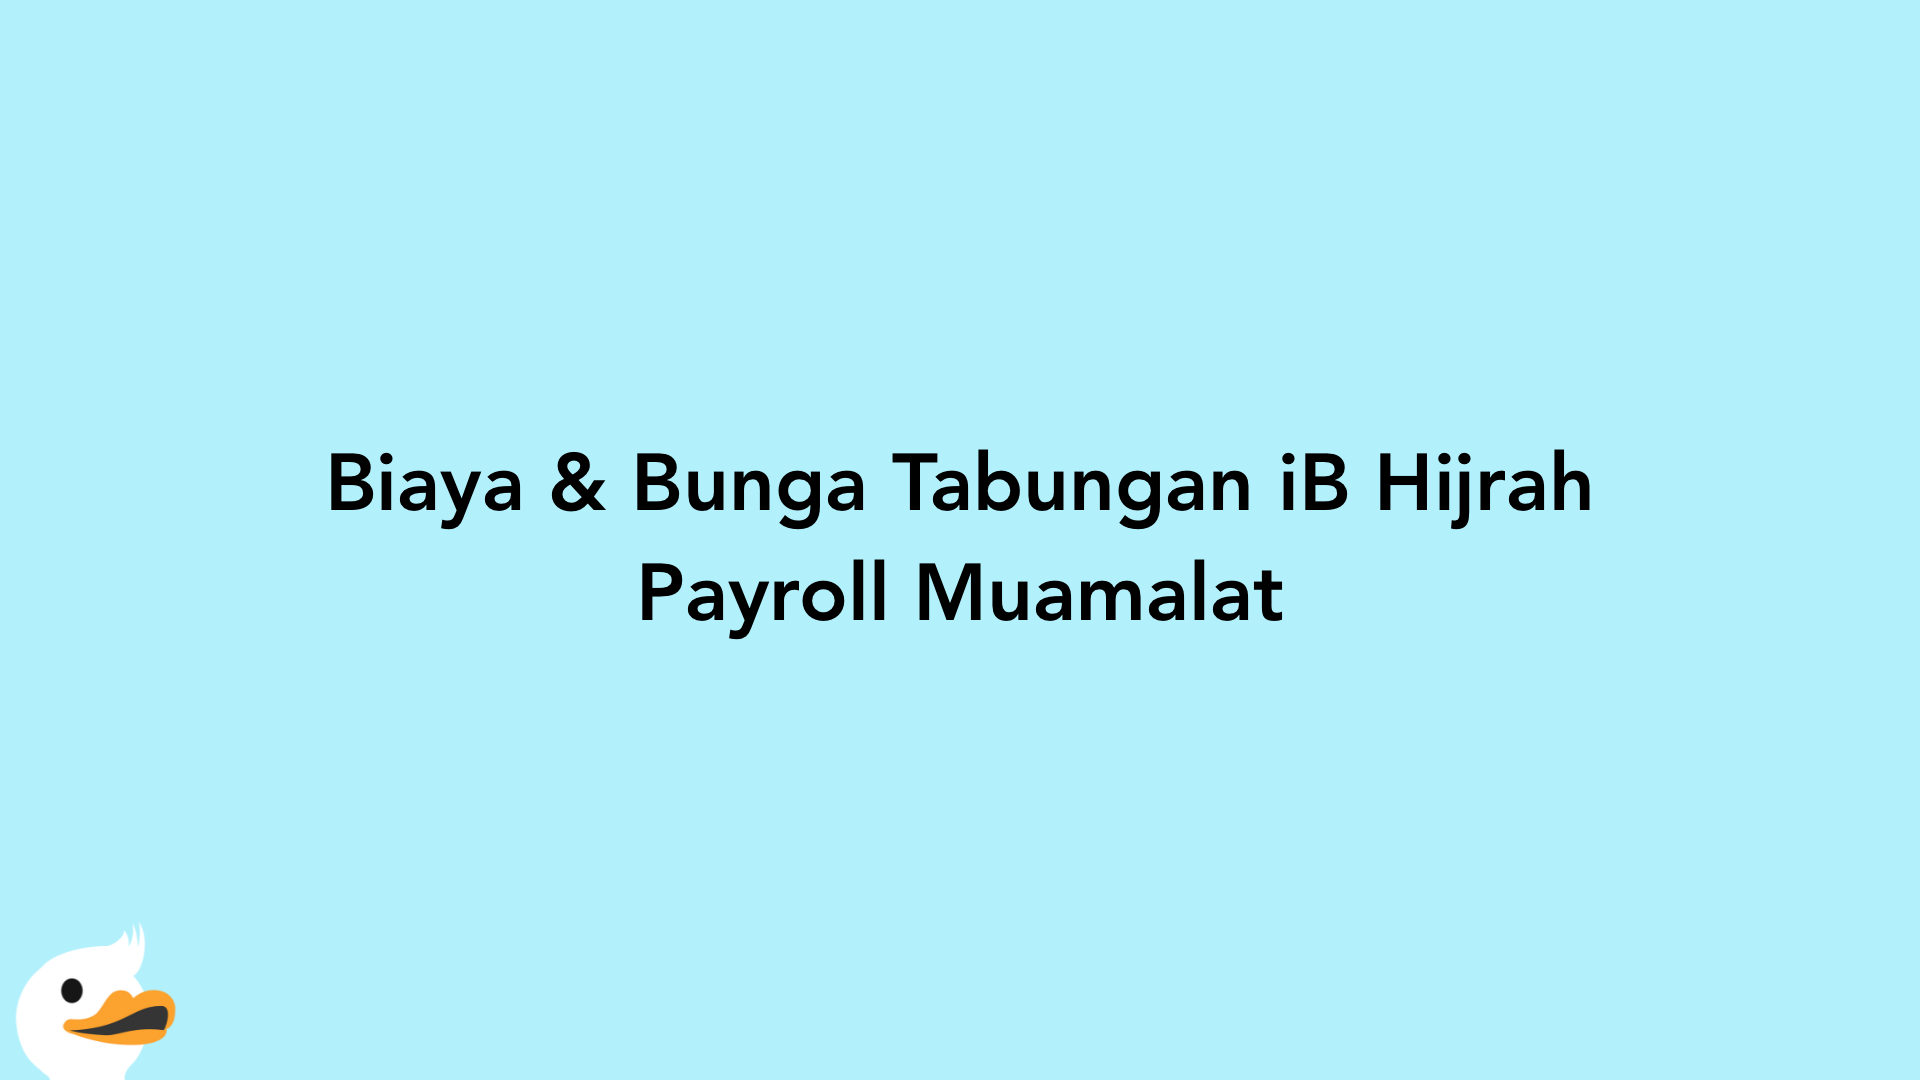 Biaya & Bunga Tabungan iB Hijrah Payroll Muamalat